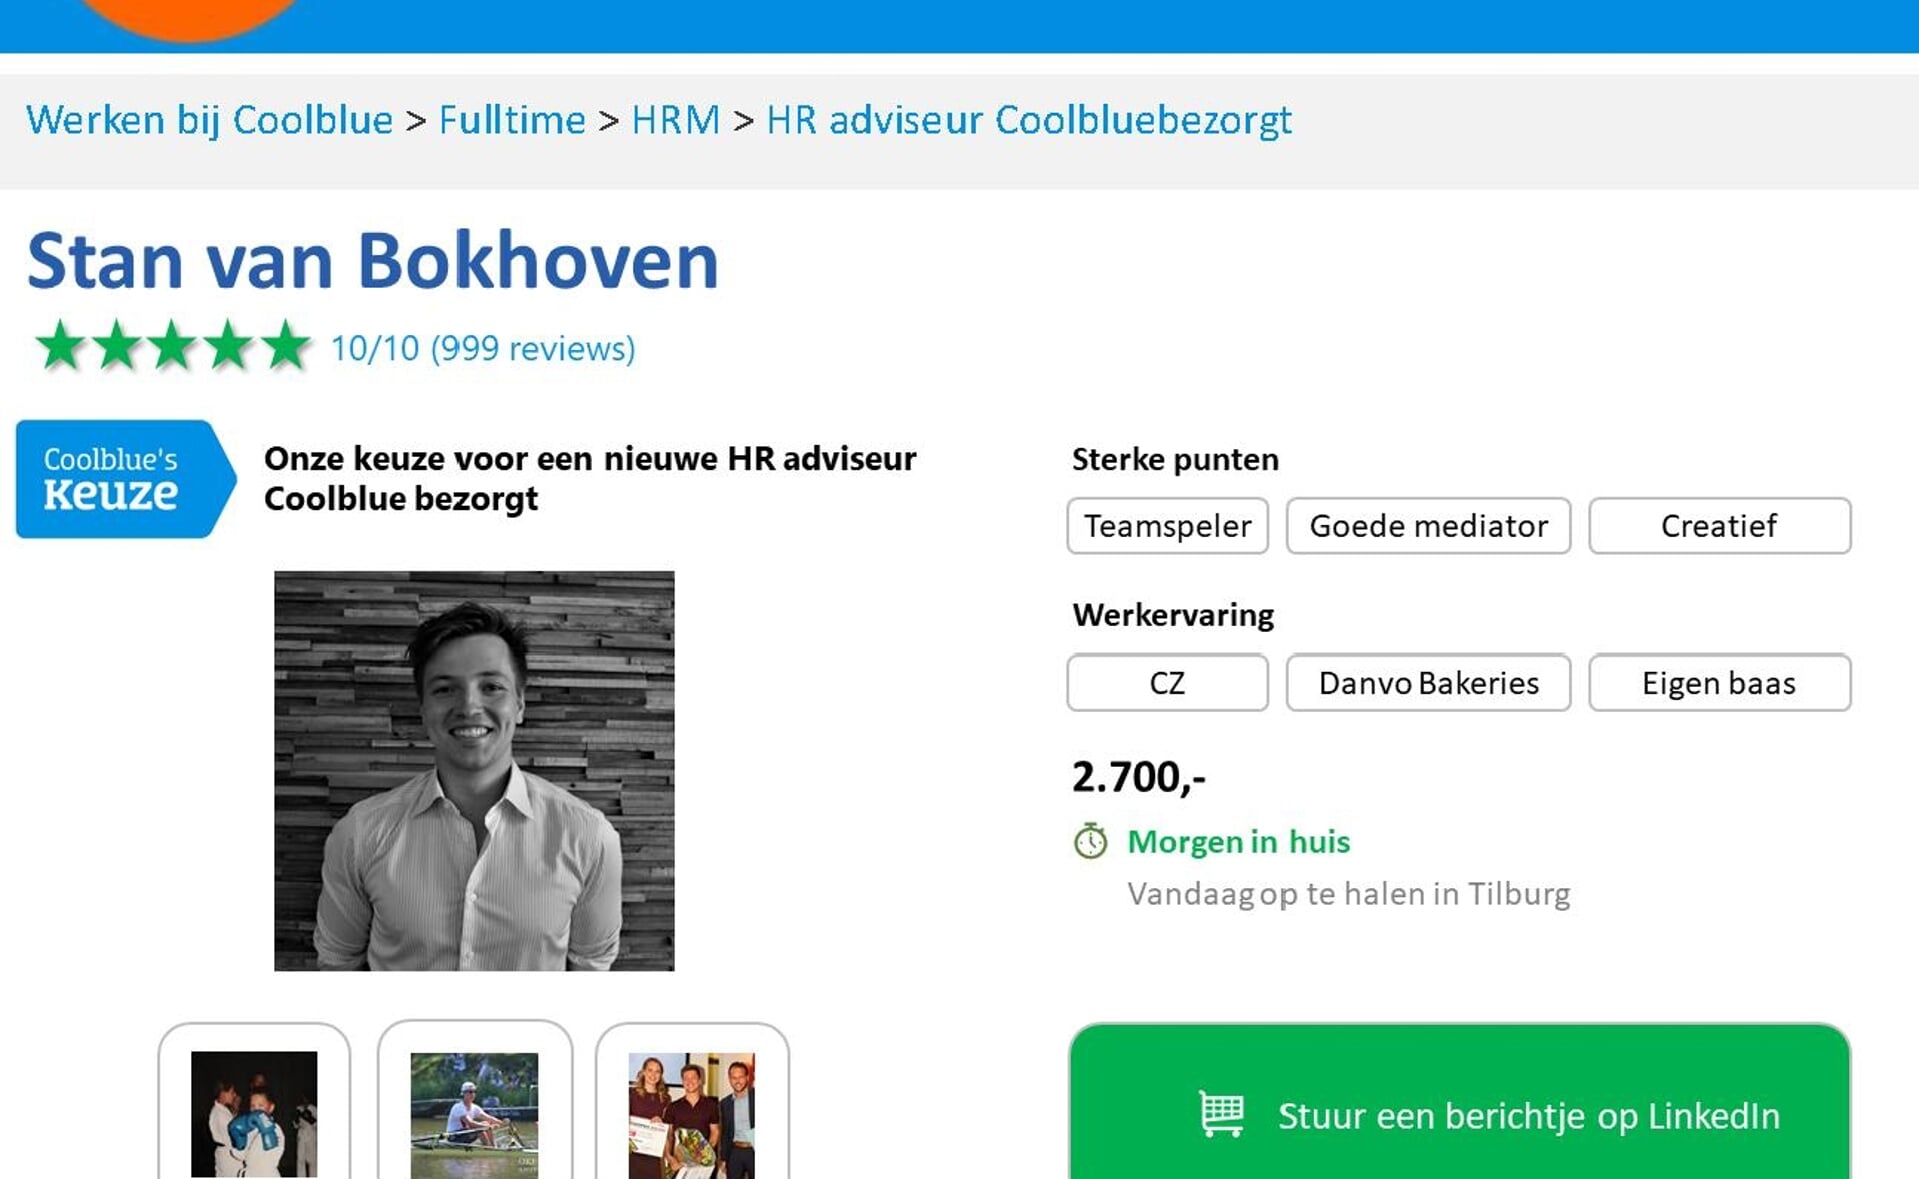 Nee, dit is geen advertentie in de krant maar de sollicitatie van Boxtelaar Stan van Bokhoven bij Coolblue.